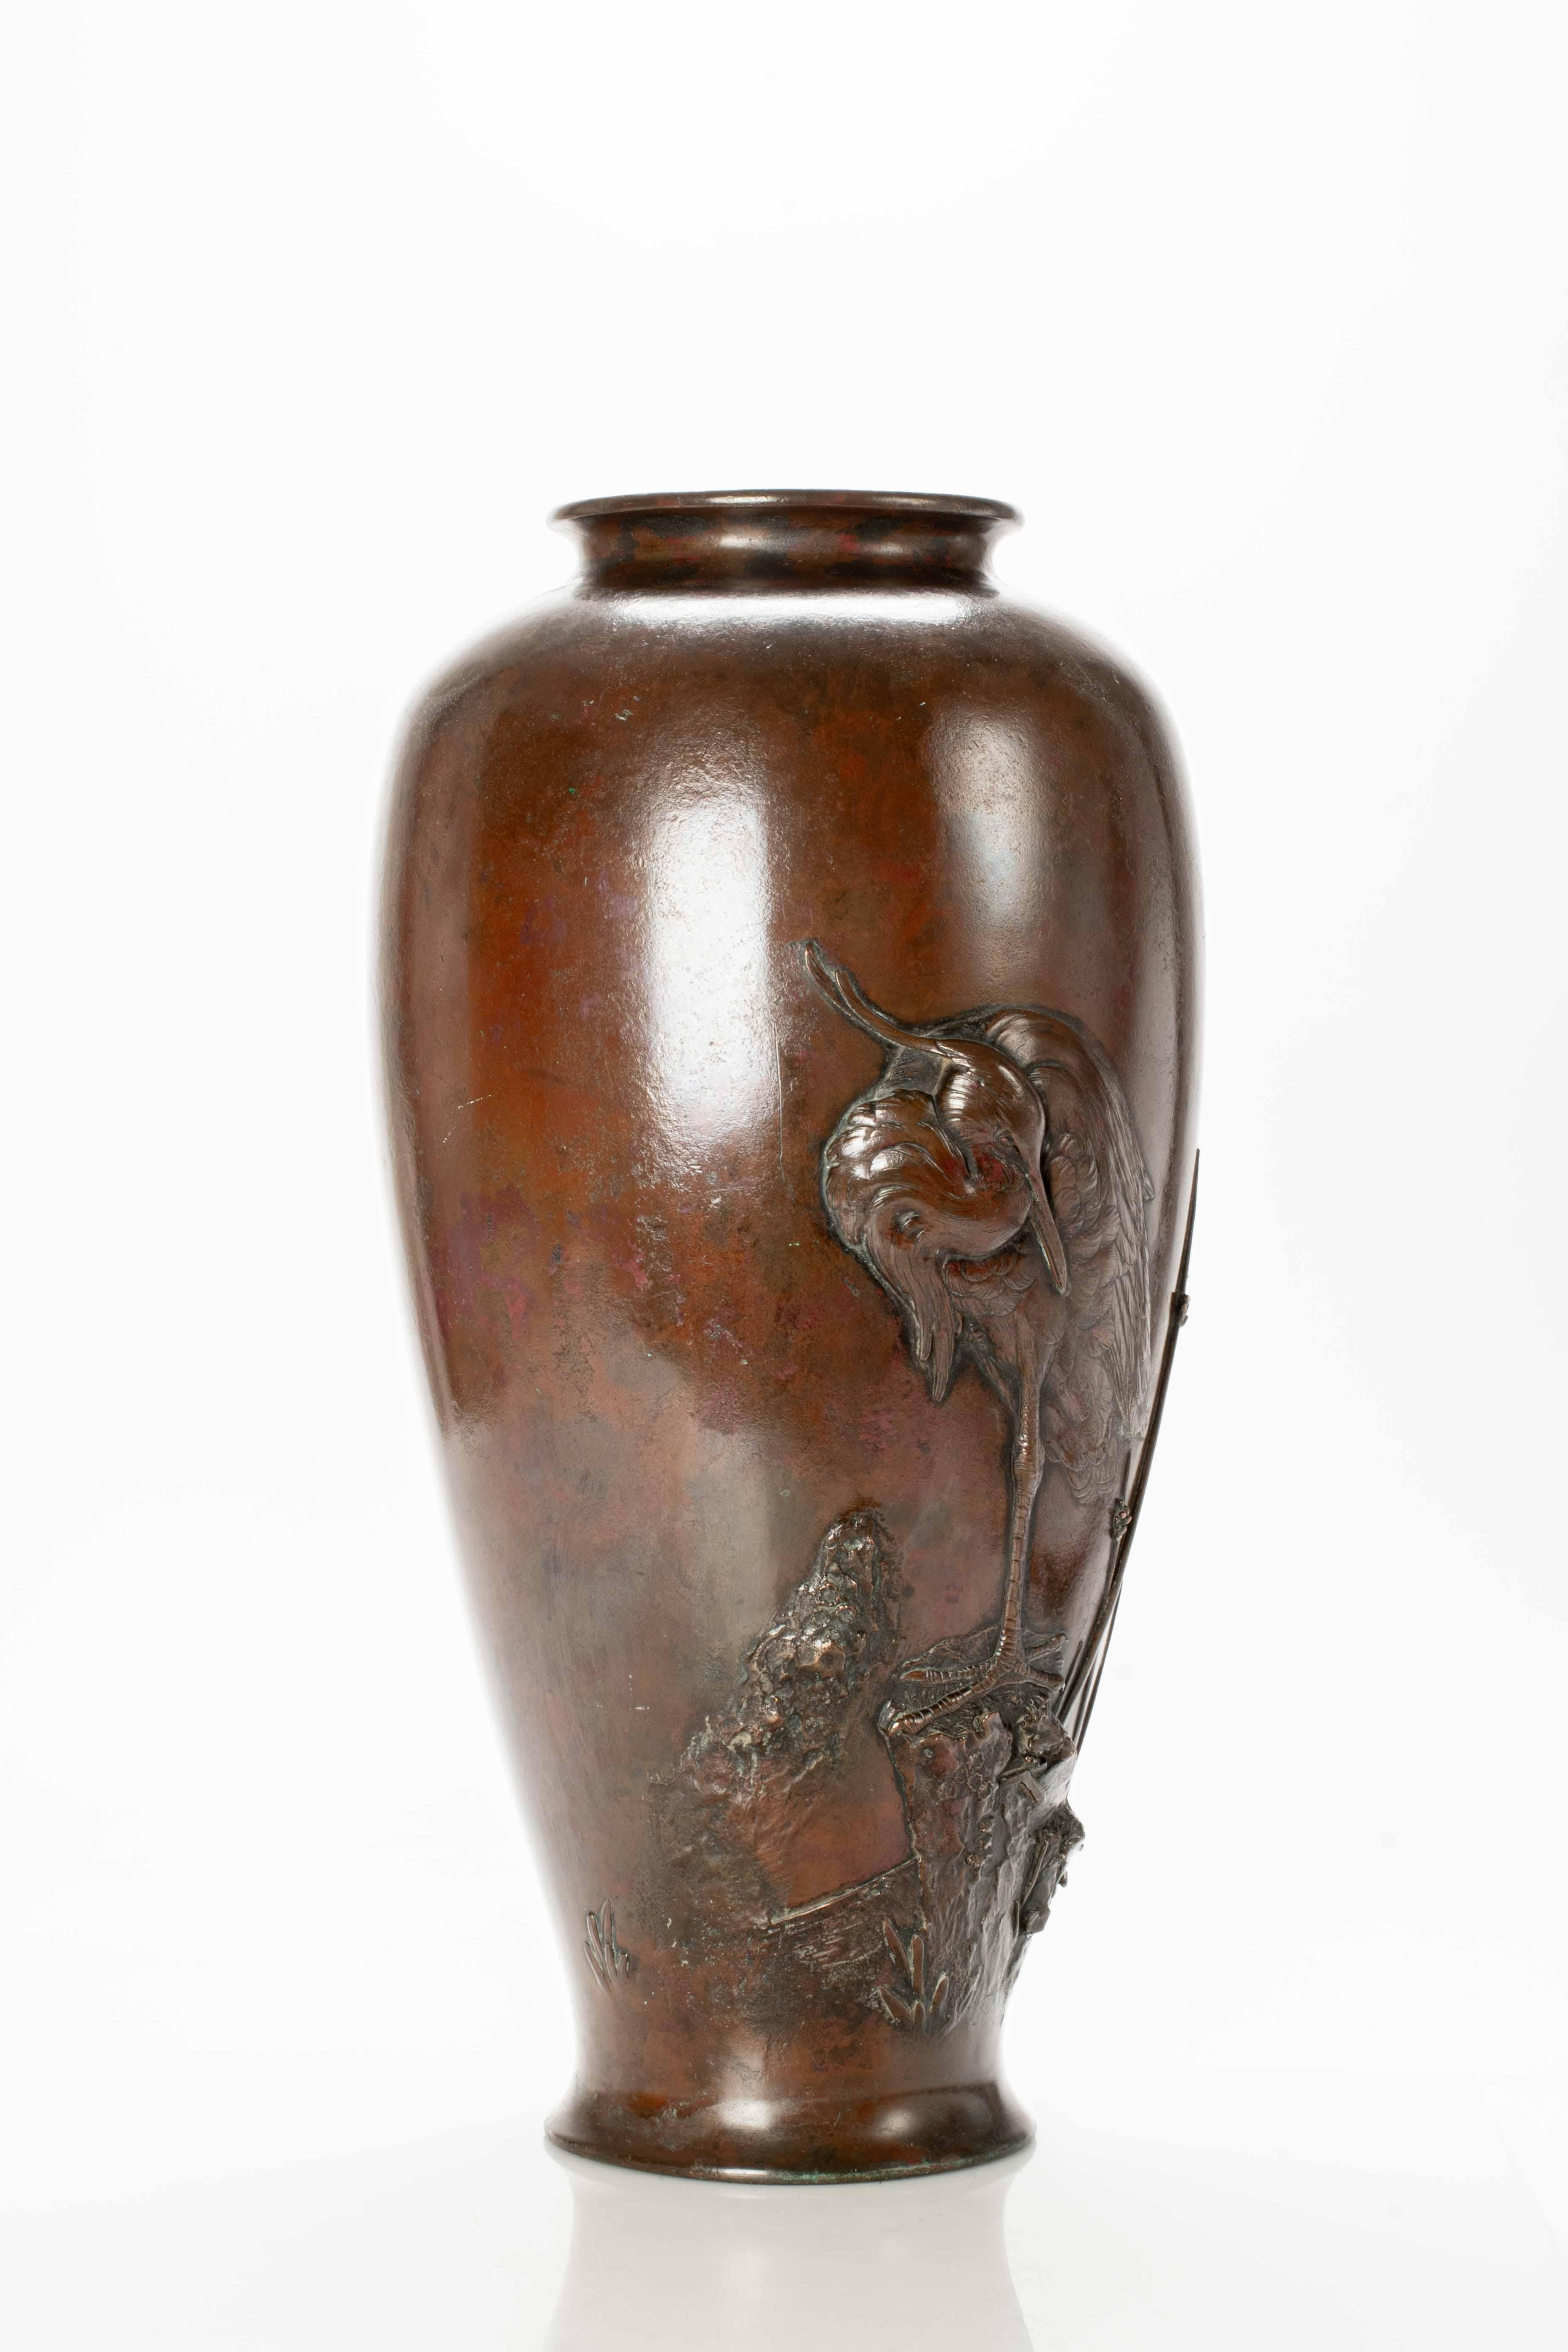 Japanese A large bronze vase depicting an egret